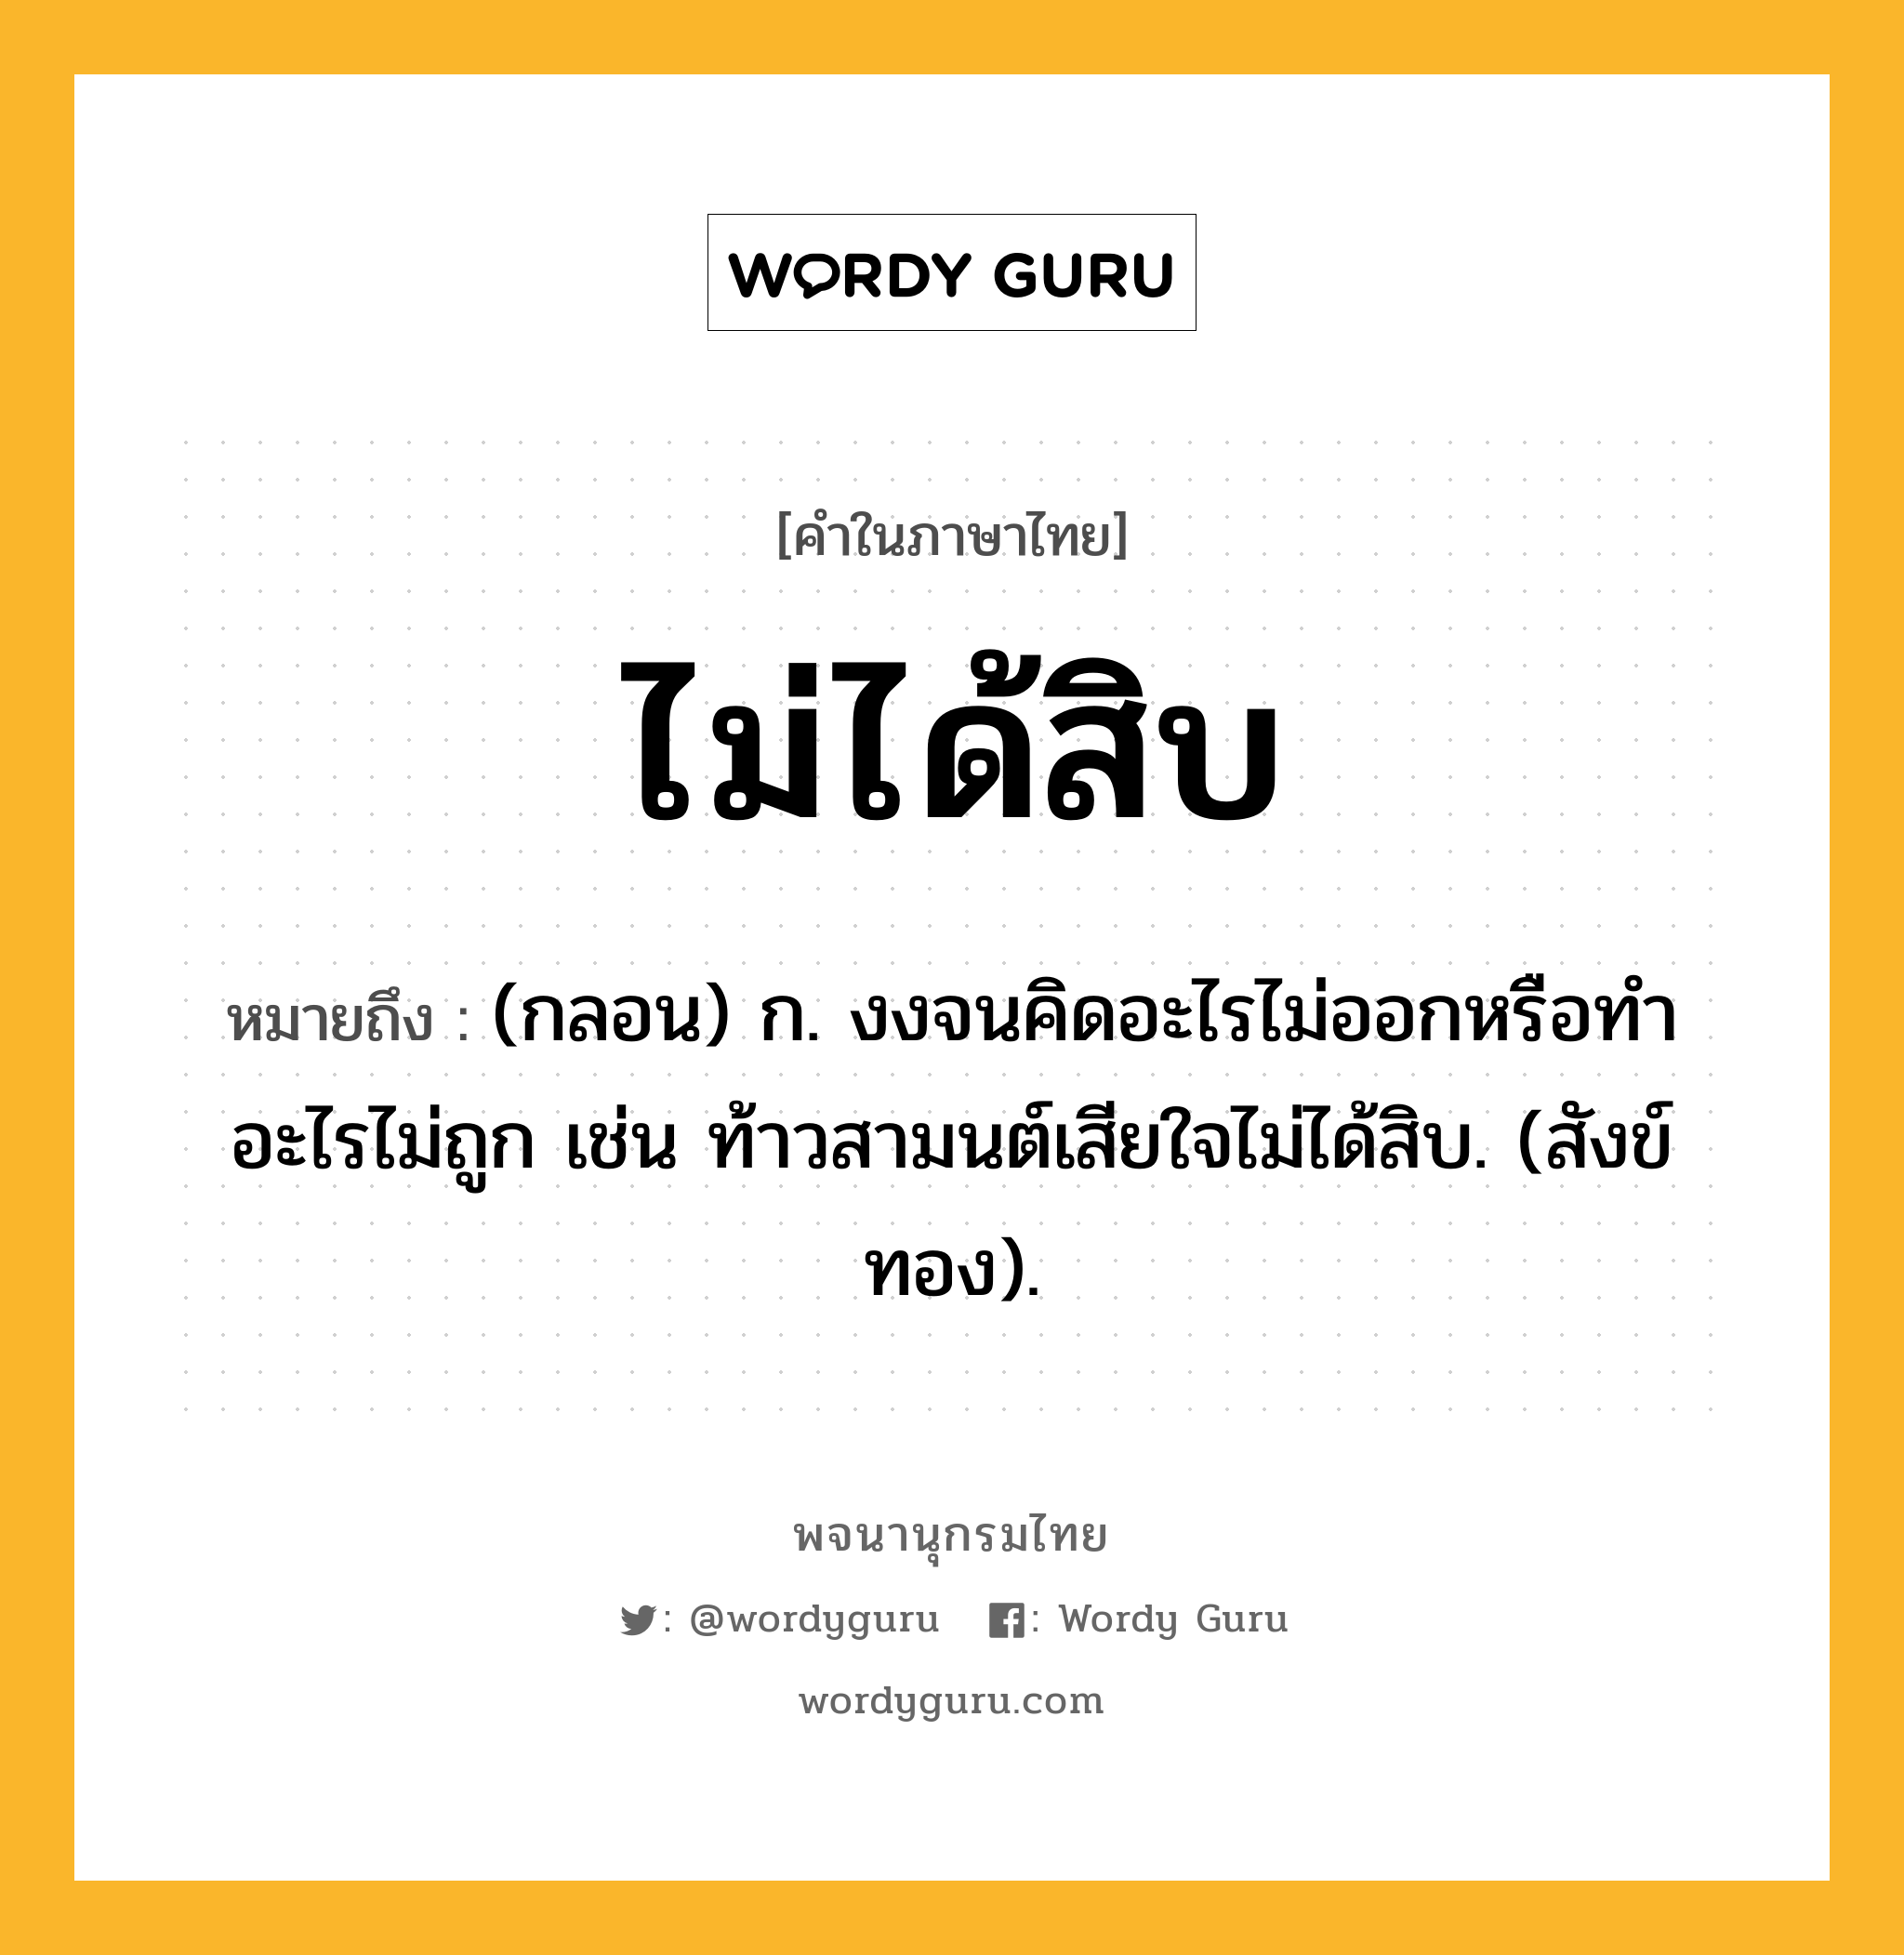 ไม่ได้สิบ หมายถึงอะไร?, คำในภาษาไทย ไม่ได้สิบ หมายถึง (กลอน) ก. งงจนคิดอะไรไม่ออกหรือทําอะไรไม่ถูก เช่น ท้าวสามนต์เสียใจไม่ได้สิบ. (สังข์ทอง).